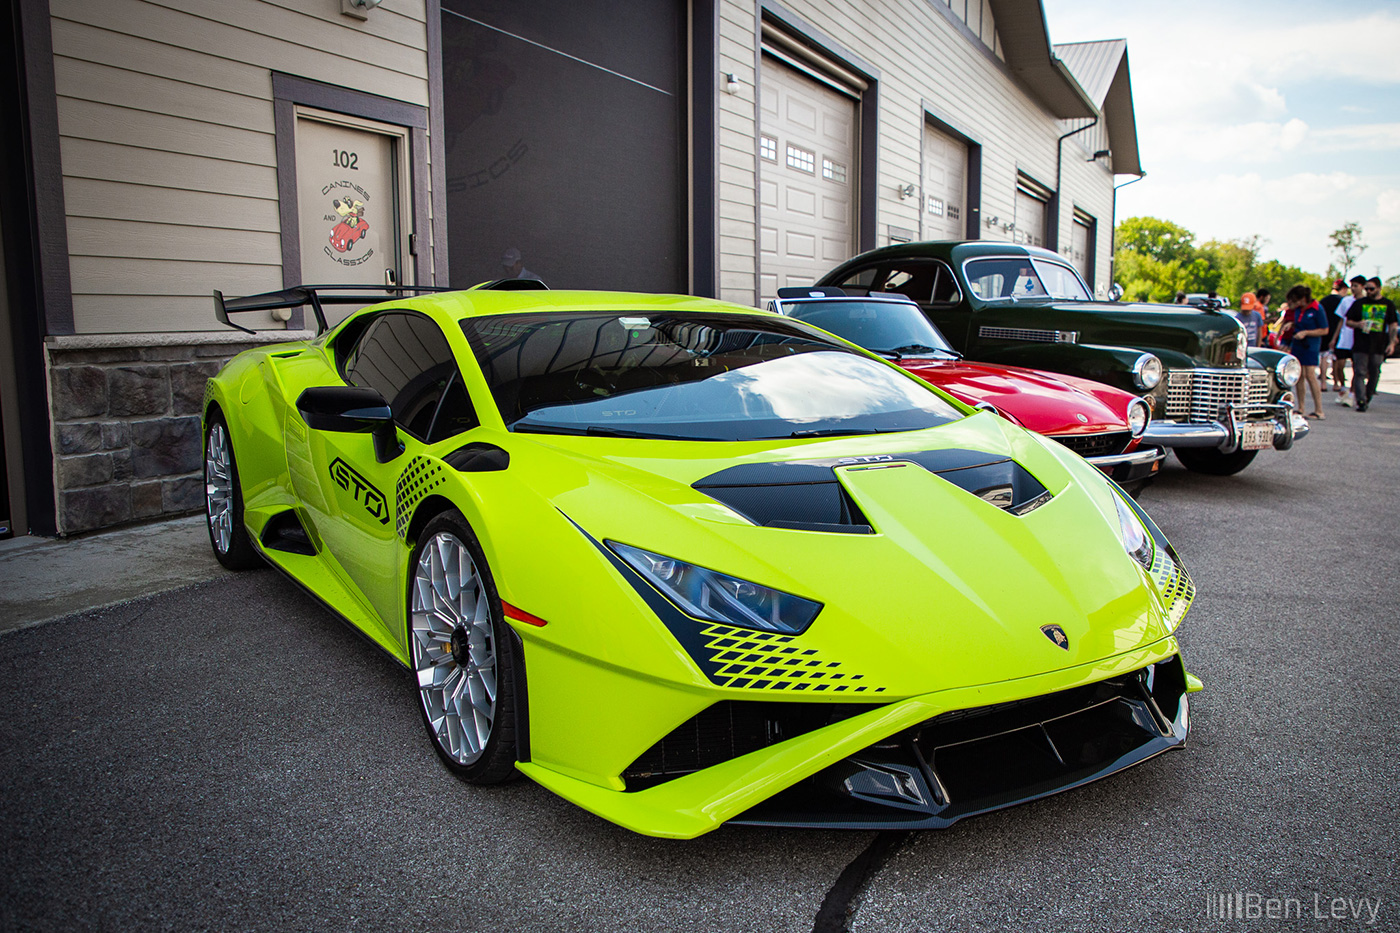 Lime Green Lamborghini at an Iron Gate Car Show